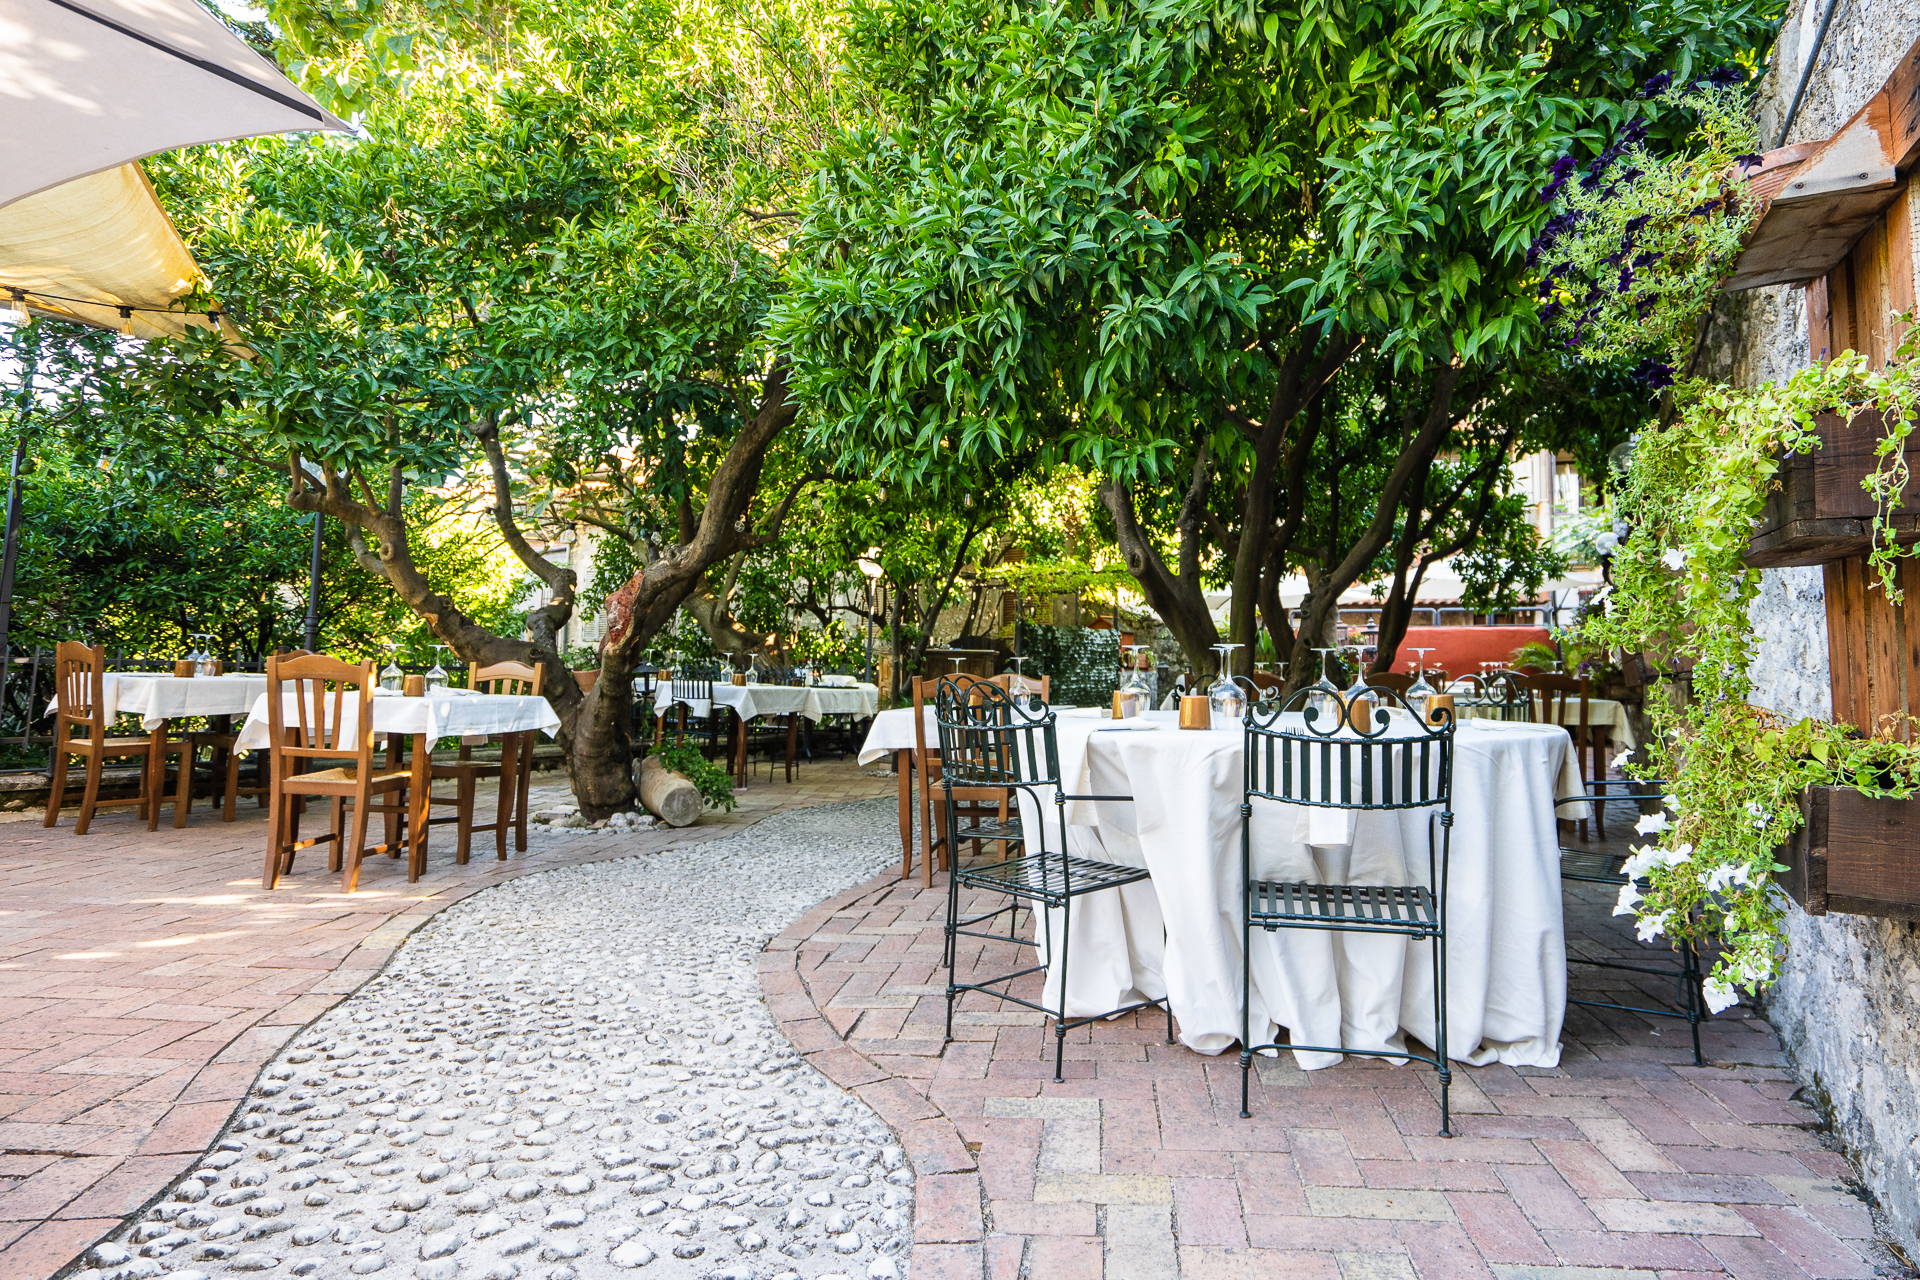 Ristorante Il Pomarancio im Freien - gelegen zwischen mittelalterlichen Mauern und duftenden Orangenbäumen